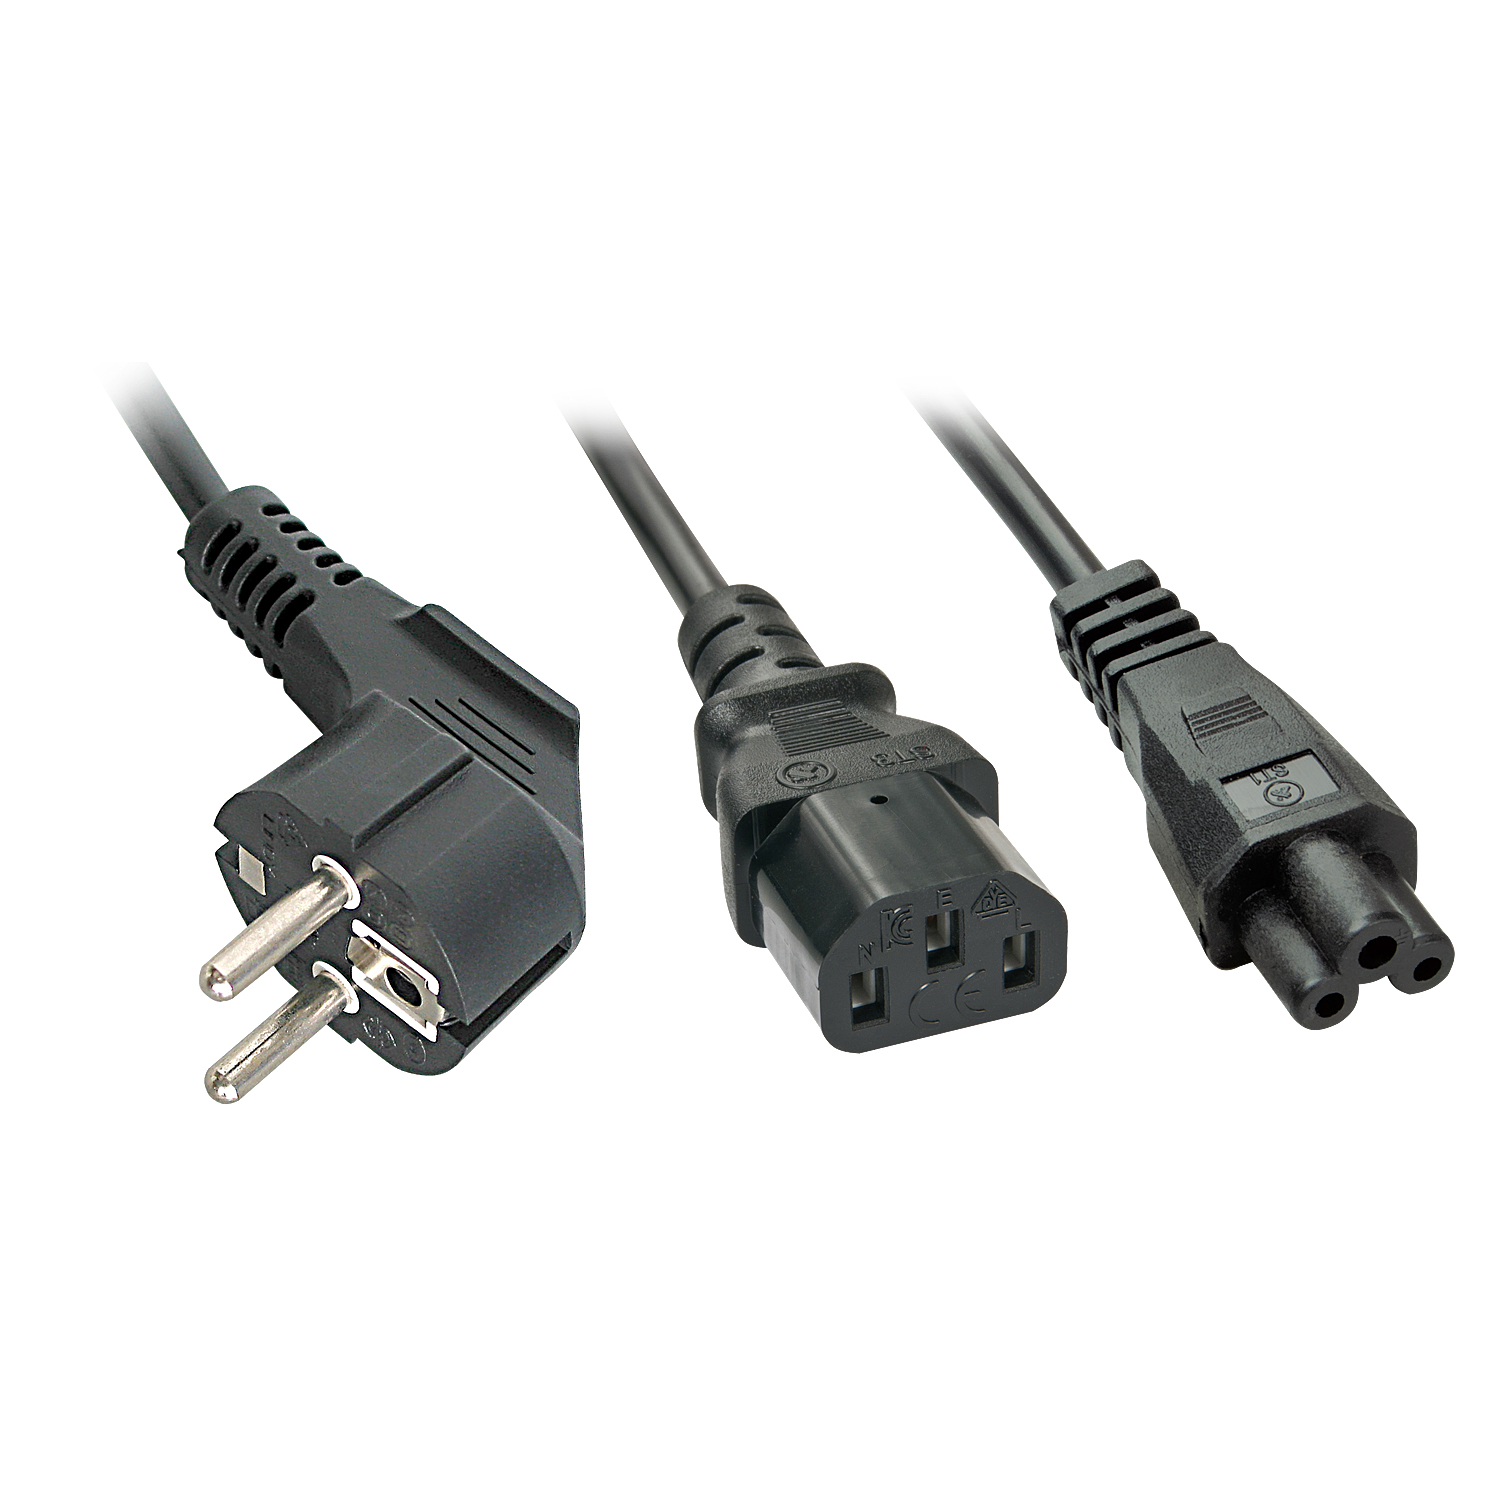 Photos - Cable (video, audio, USB) Lindy 30047 power cable Black C13 coupler C5 coupler 